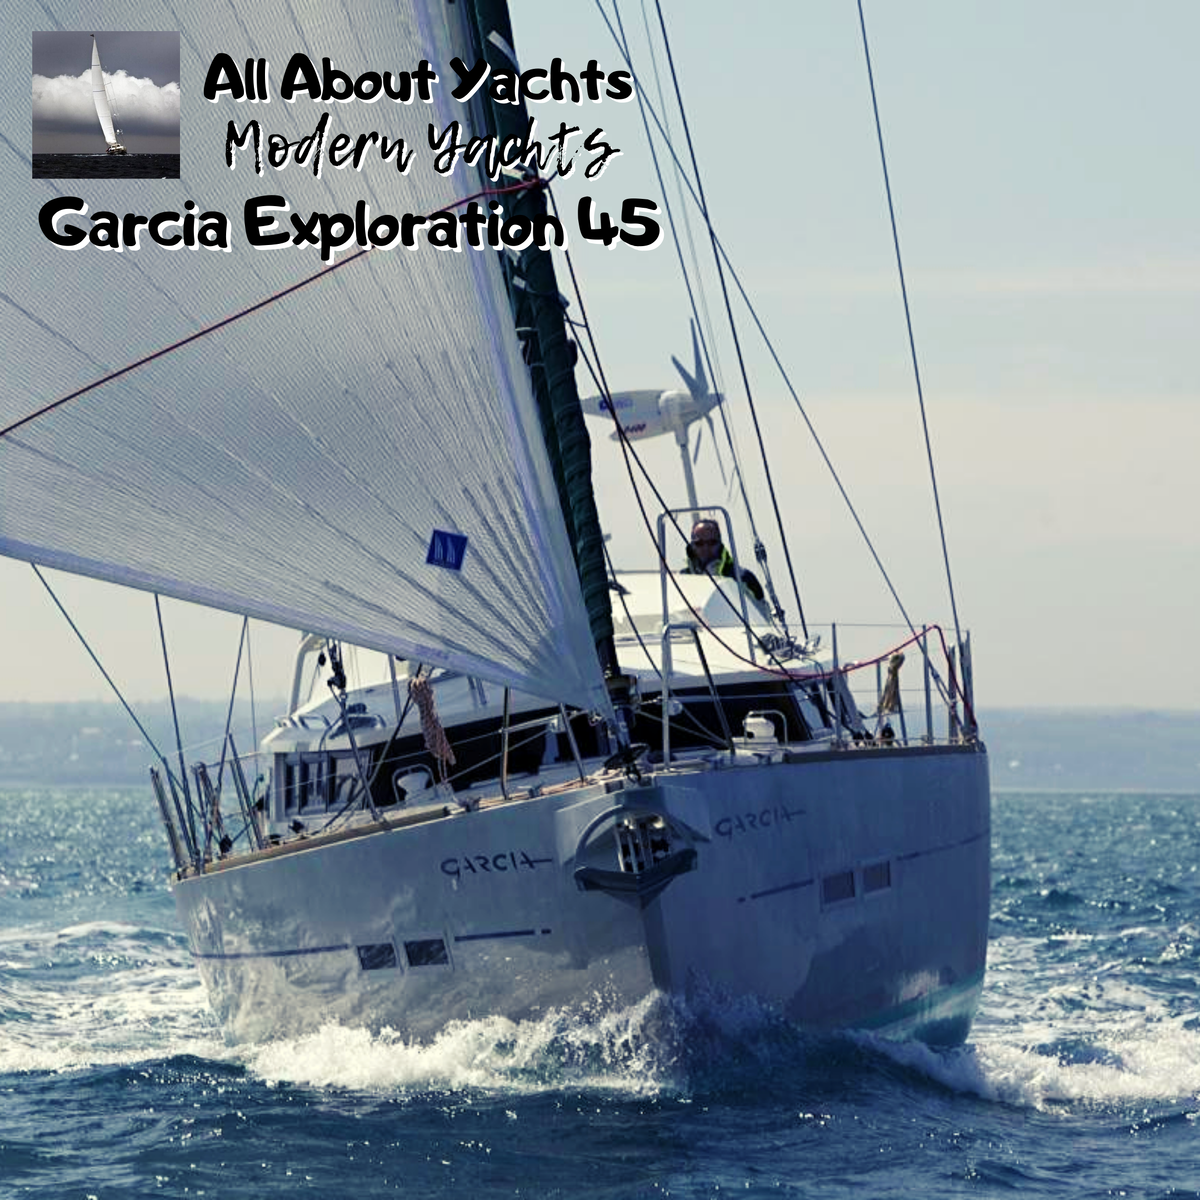 Яхта Garcia Exporation 45 - дитя легендарного яхтсмена Джимми Корнелла и всемирно известной верфи Garcia Yachting.